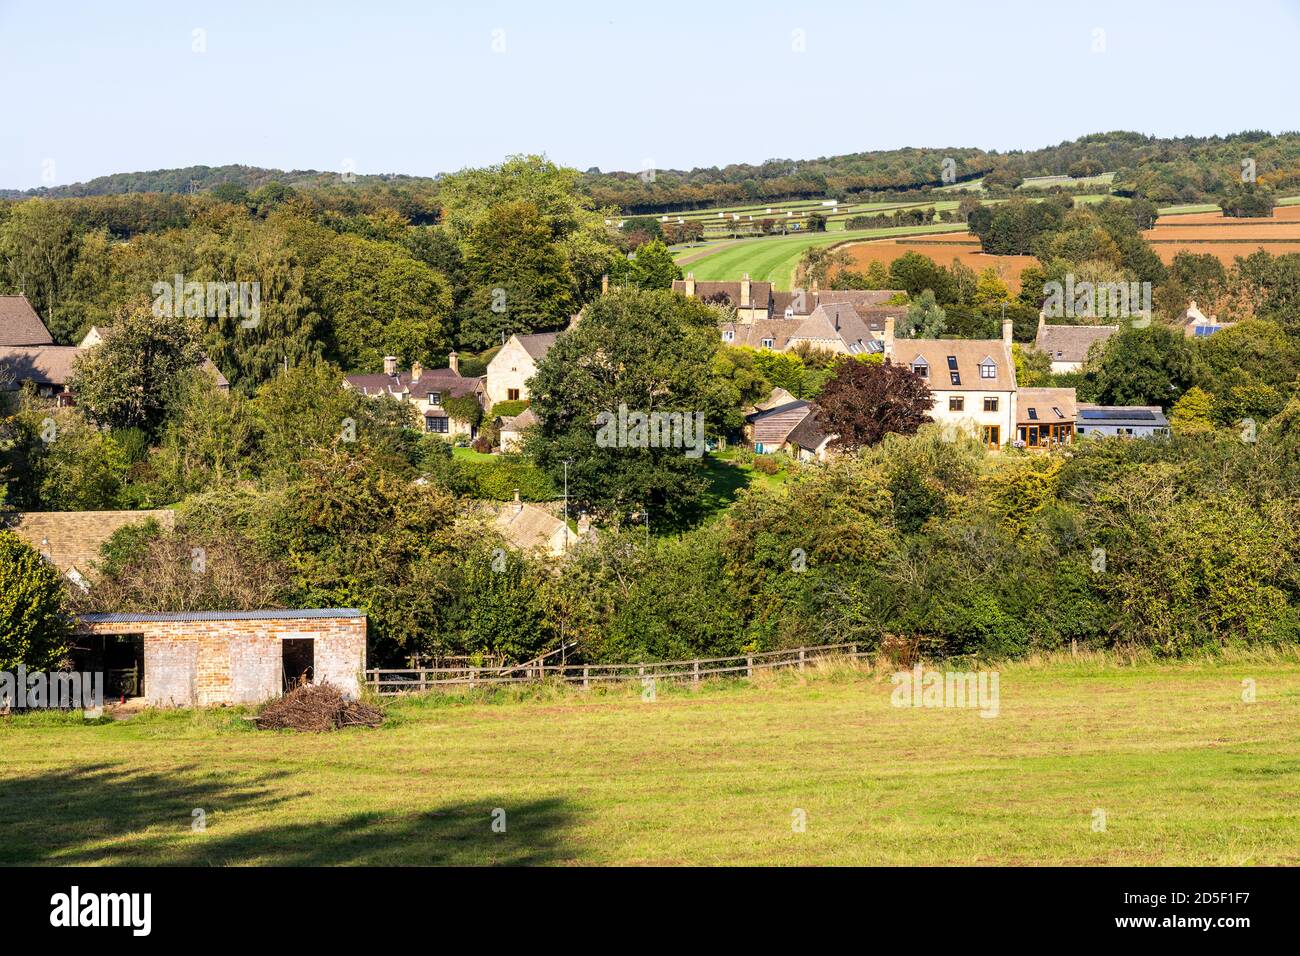 El pueblo Cotswold de Ford, Gloucestershire, Reino Unido - en una zona famosa por sus establos de carreras y hogar del castillo Jackdaws de Jonjo o’Neill Foto de stock